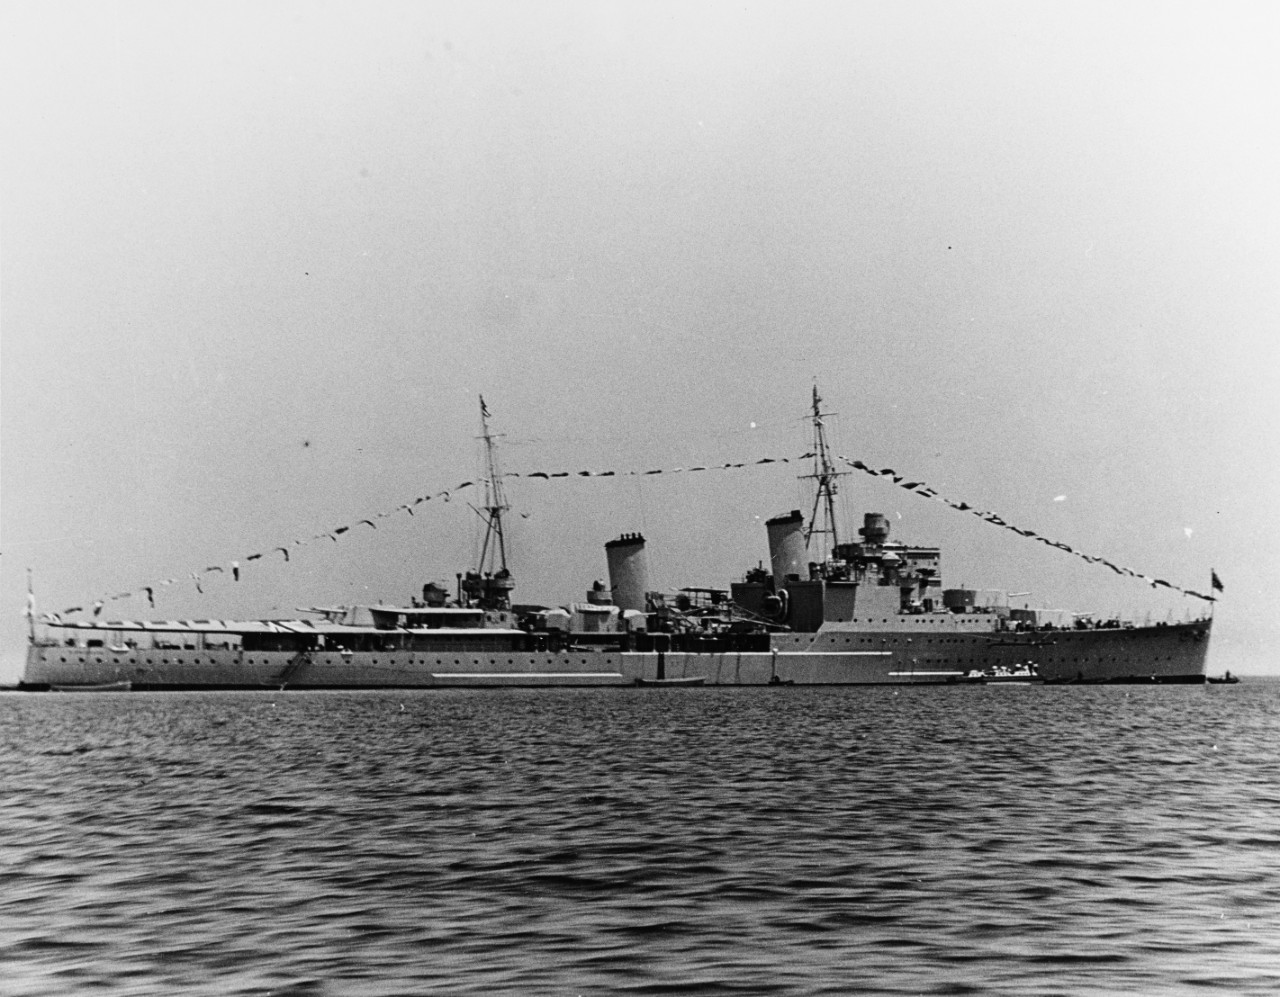 HMS Birmingham, British Cruiser, circa 1936